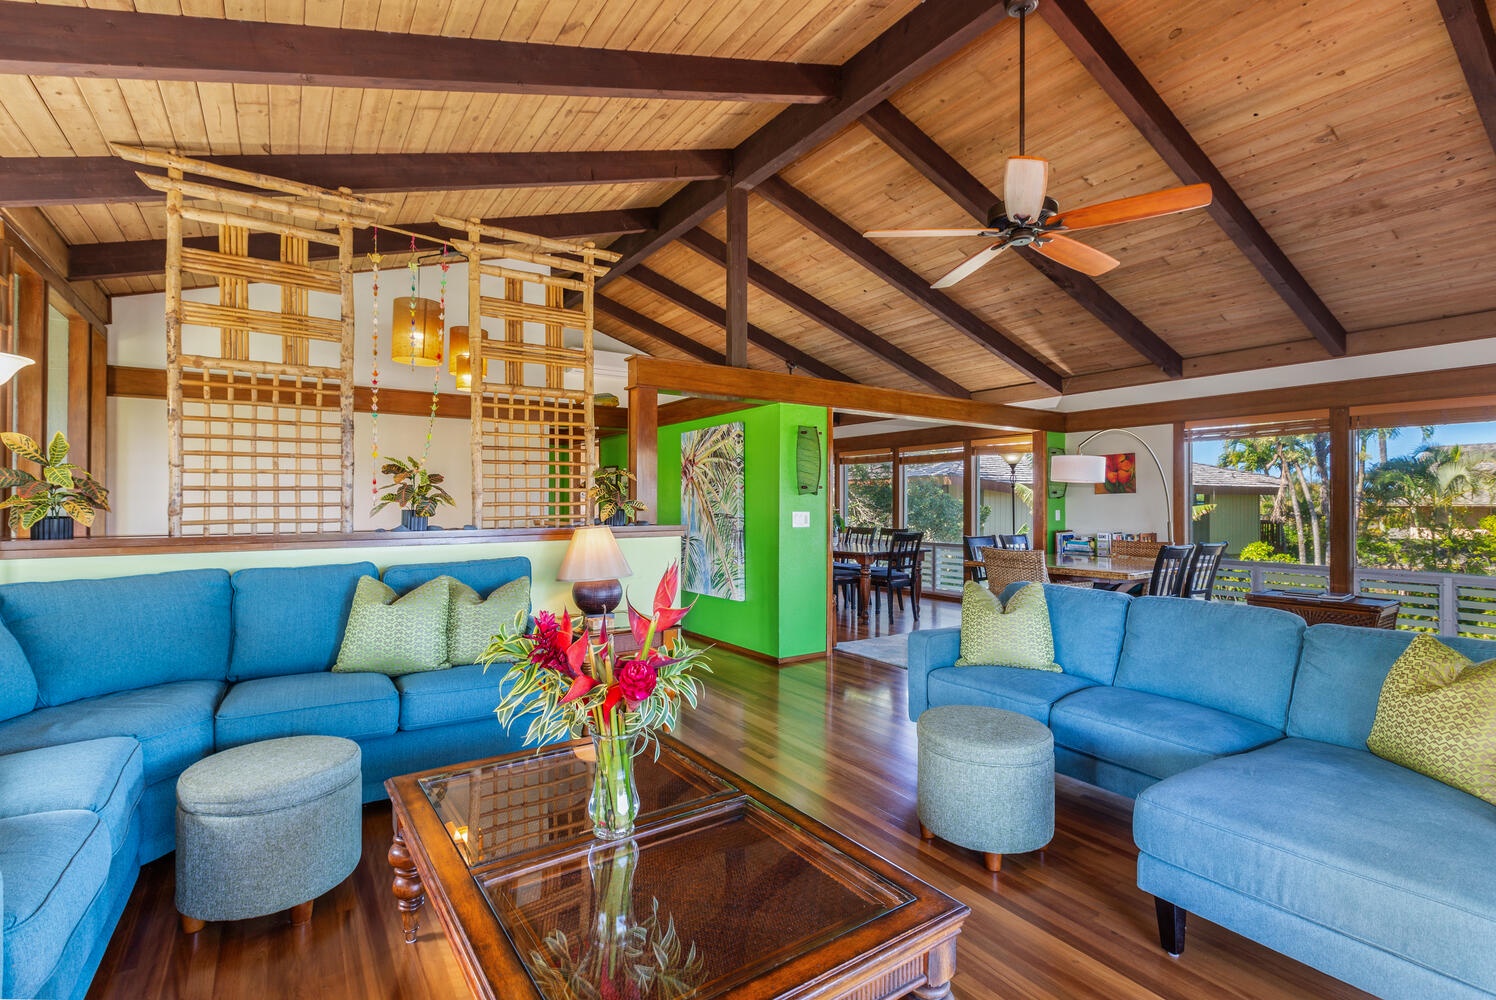 Princeville Vacation Rentals, Hale Anu Keanu - Living Area